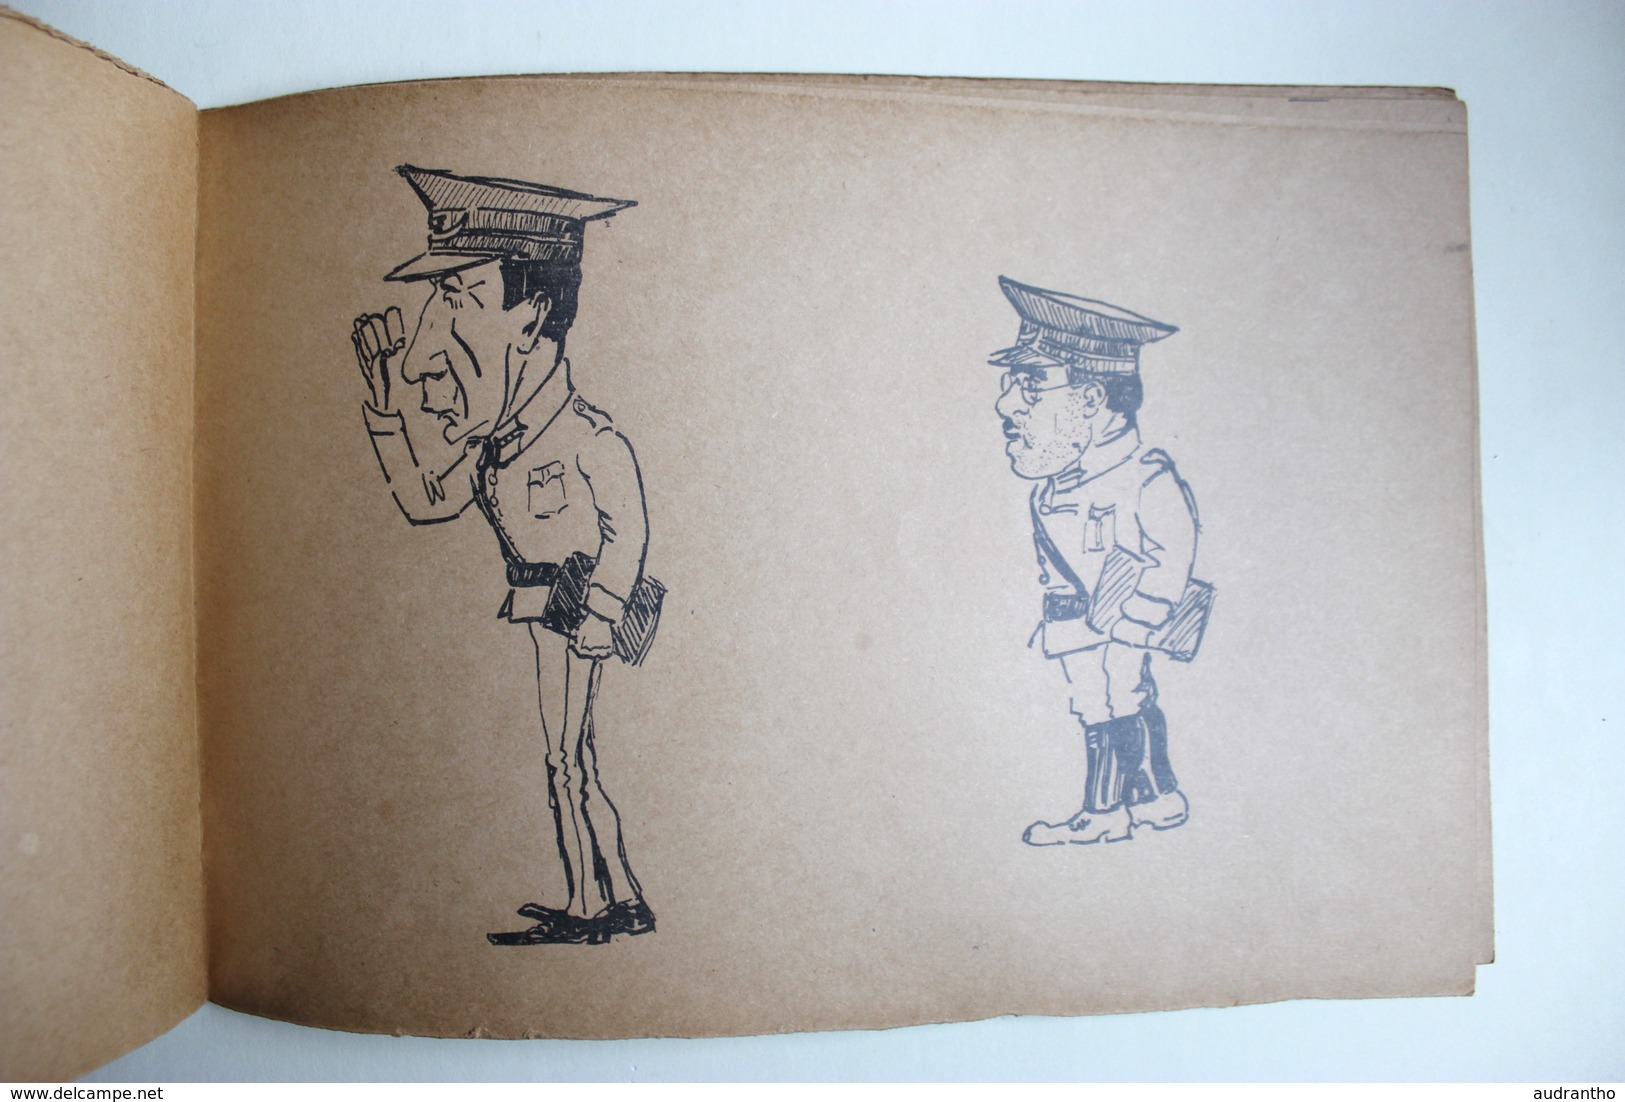 Livret de caricatures SAPEUR école militaire d'application du génie 1928